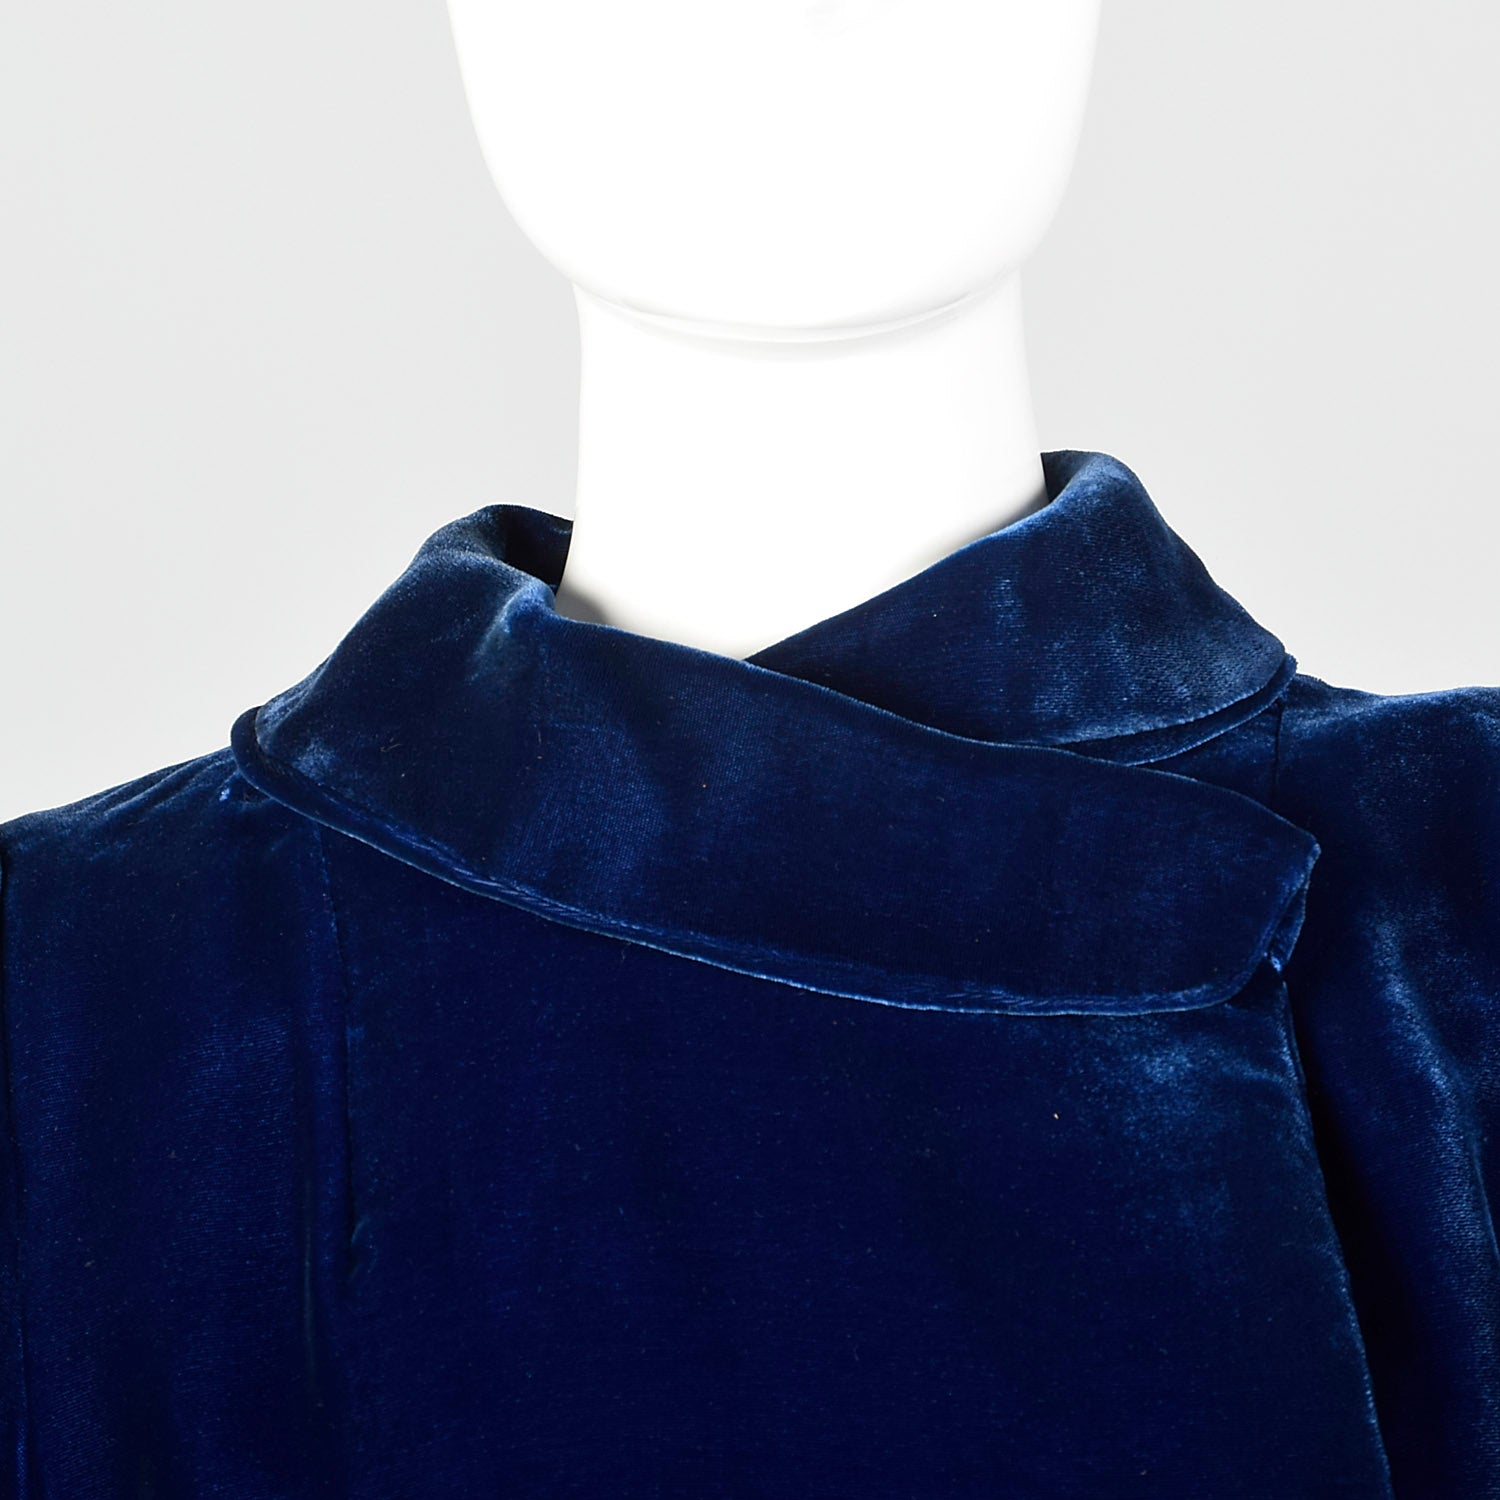 XXS 1940s Blue Velvet Opera Coat